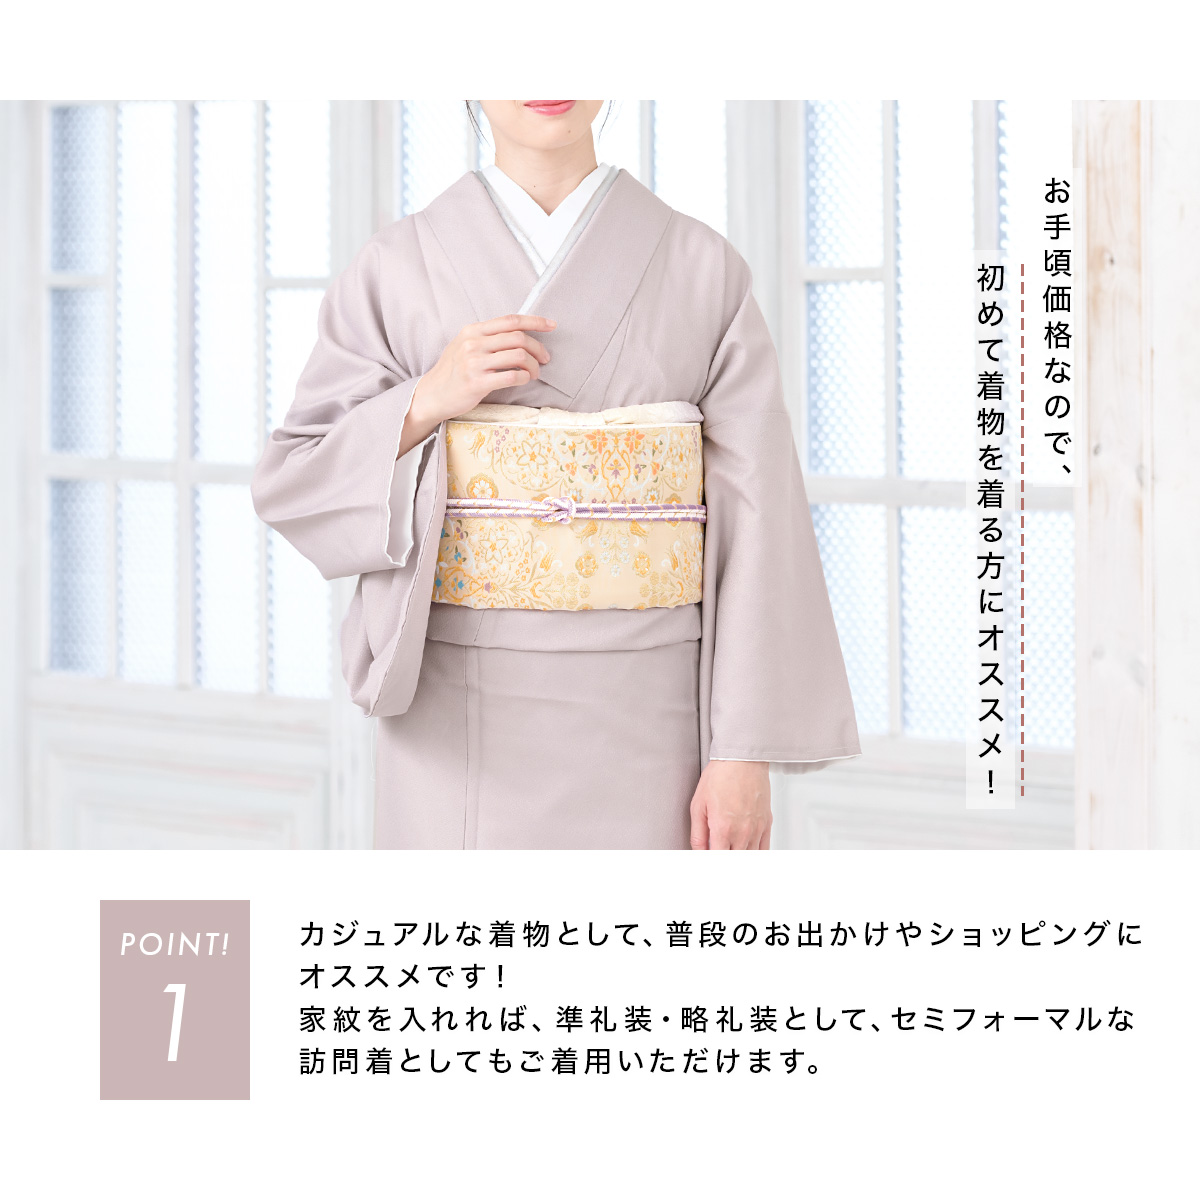 ... кимоно одиночный . однотонная ткань кимоно женщина женский pre ta кимоно совершенно новый M L одиночный товар бесплатная доставка MoP